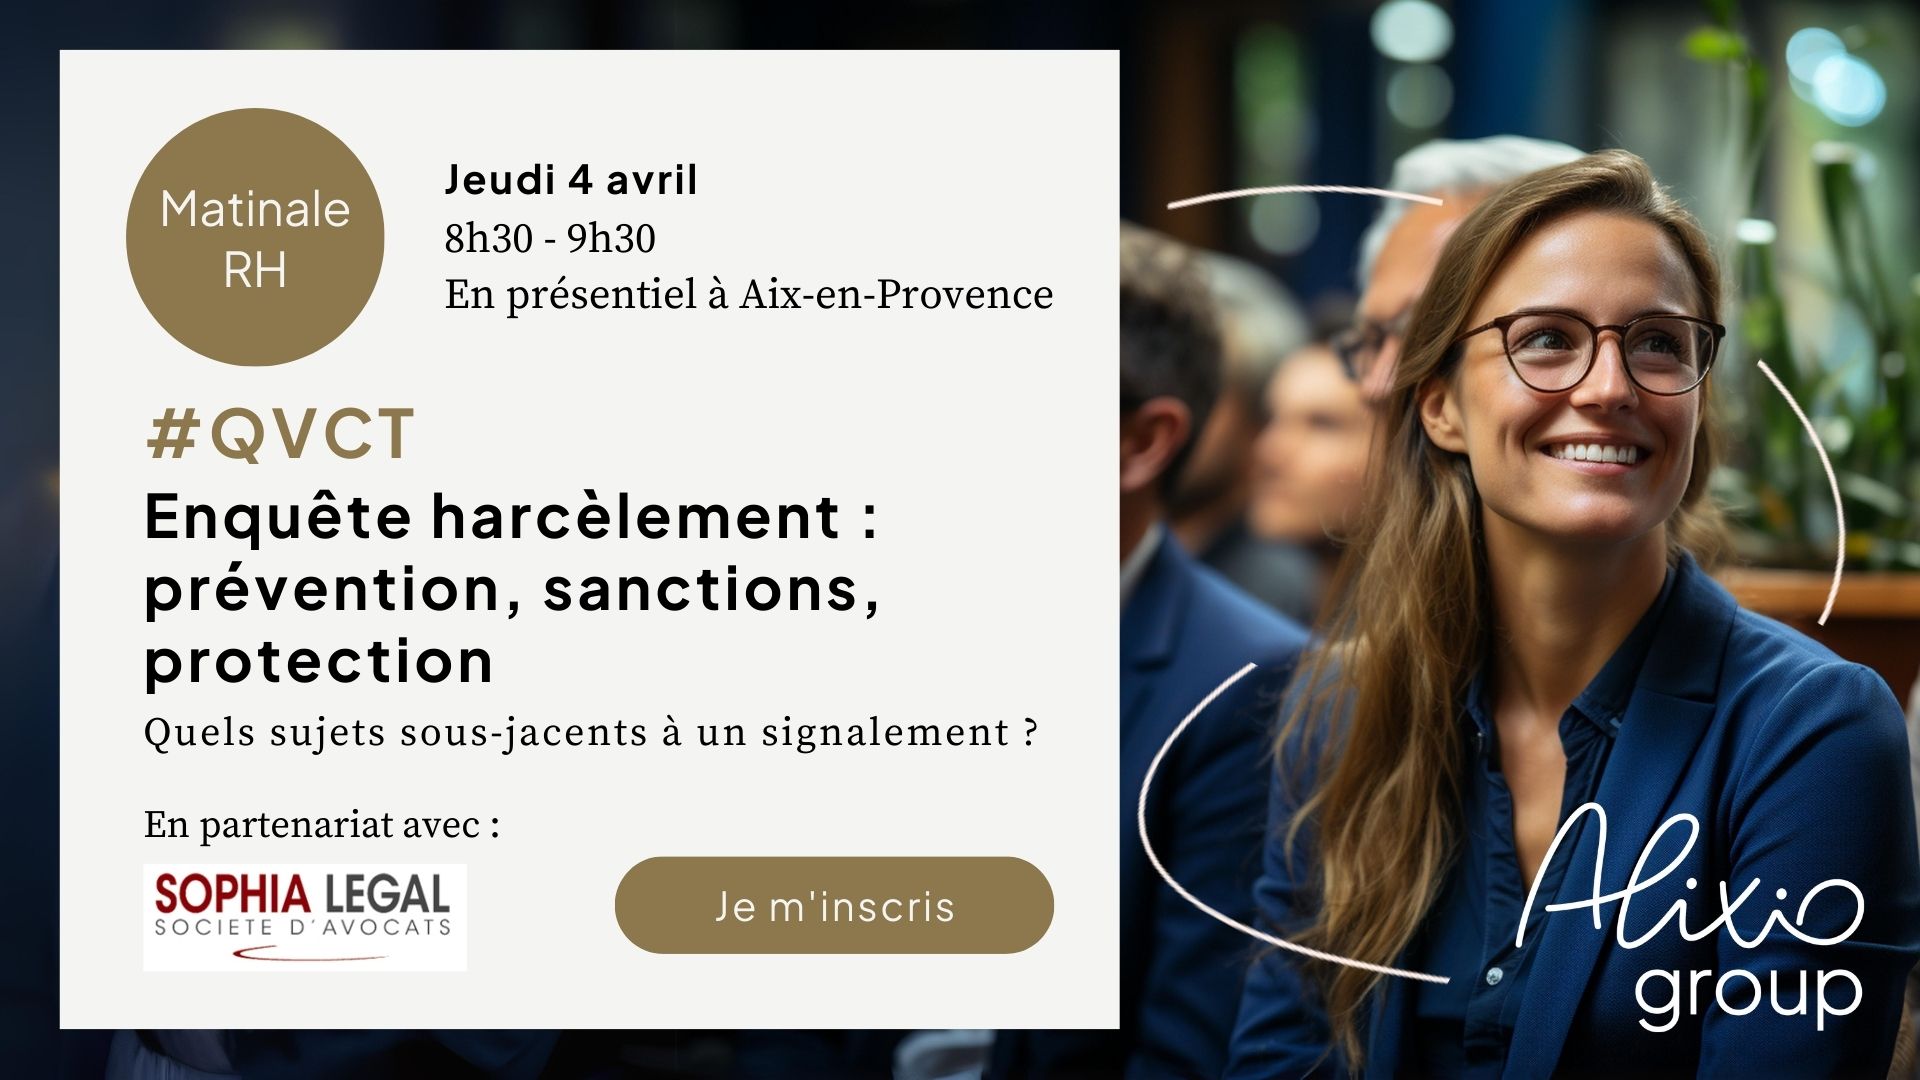 Invitation à la Matinale RH QVCT "Enquête harcèlement" du 4 avril 2024 à Aix-en-Provence